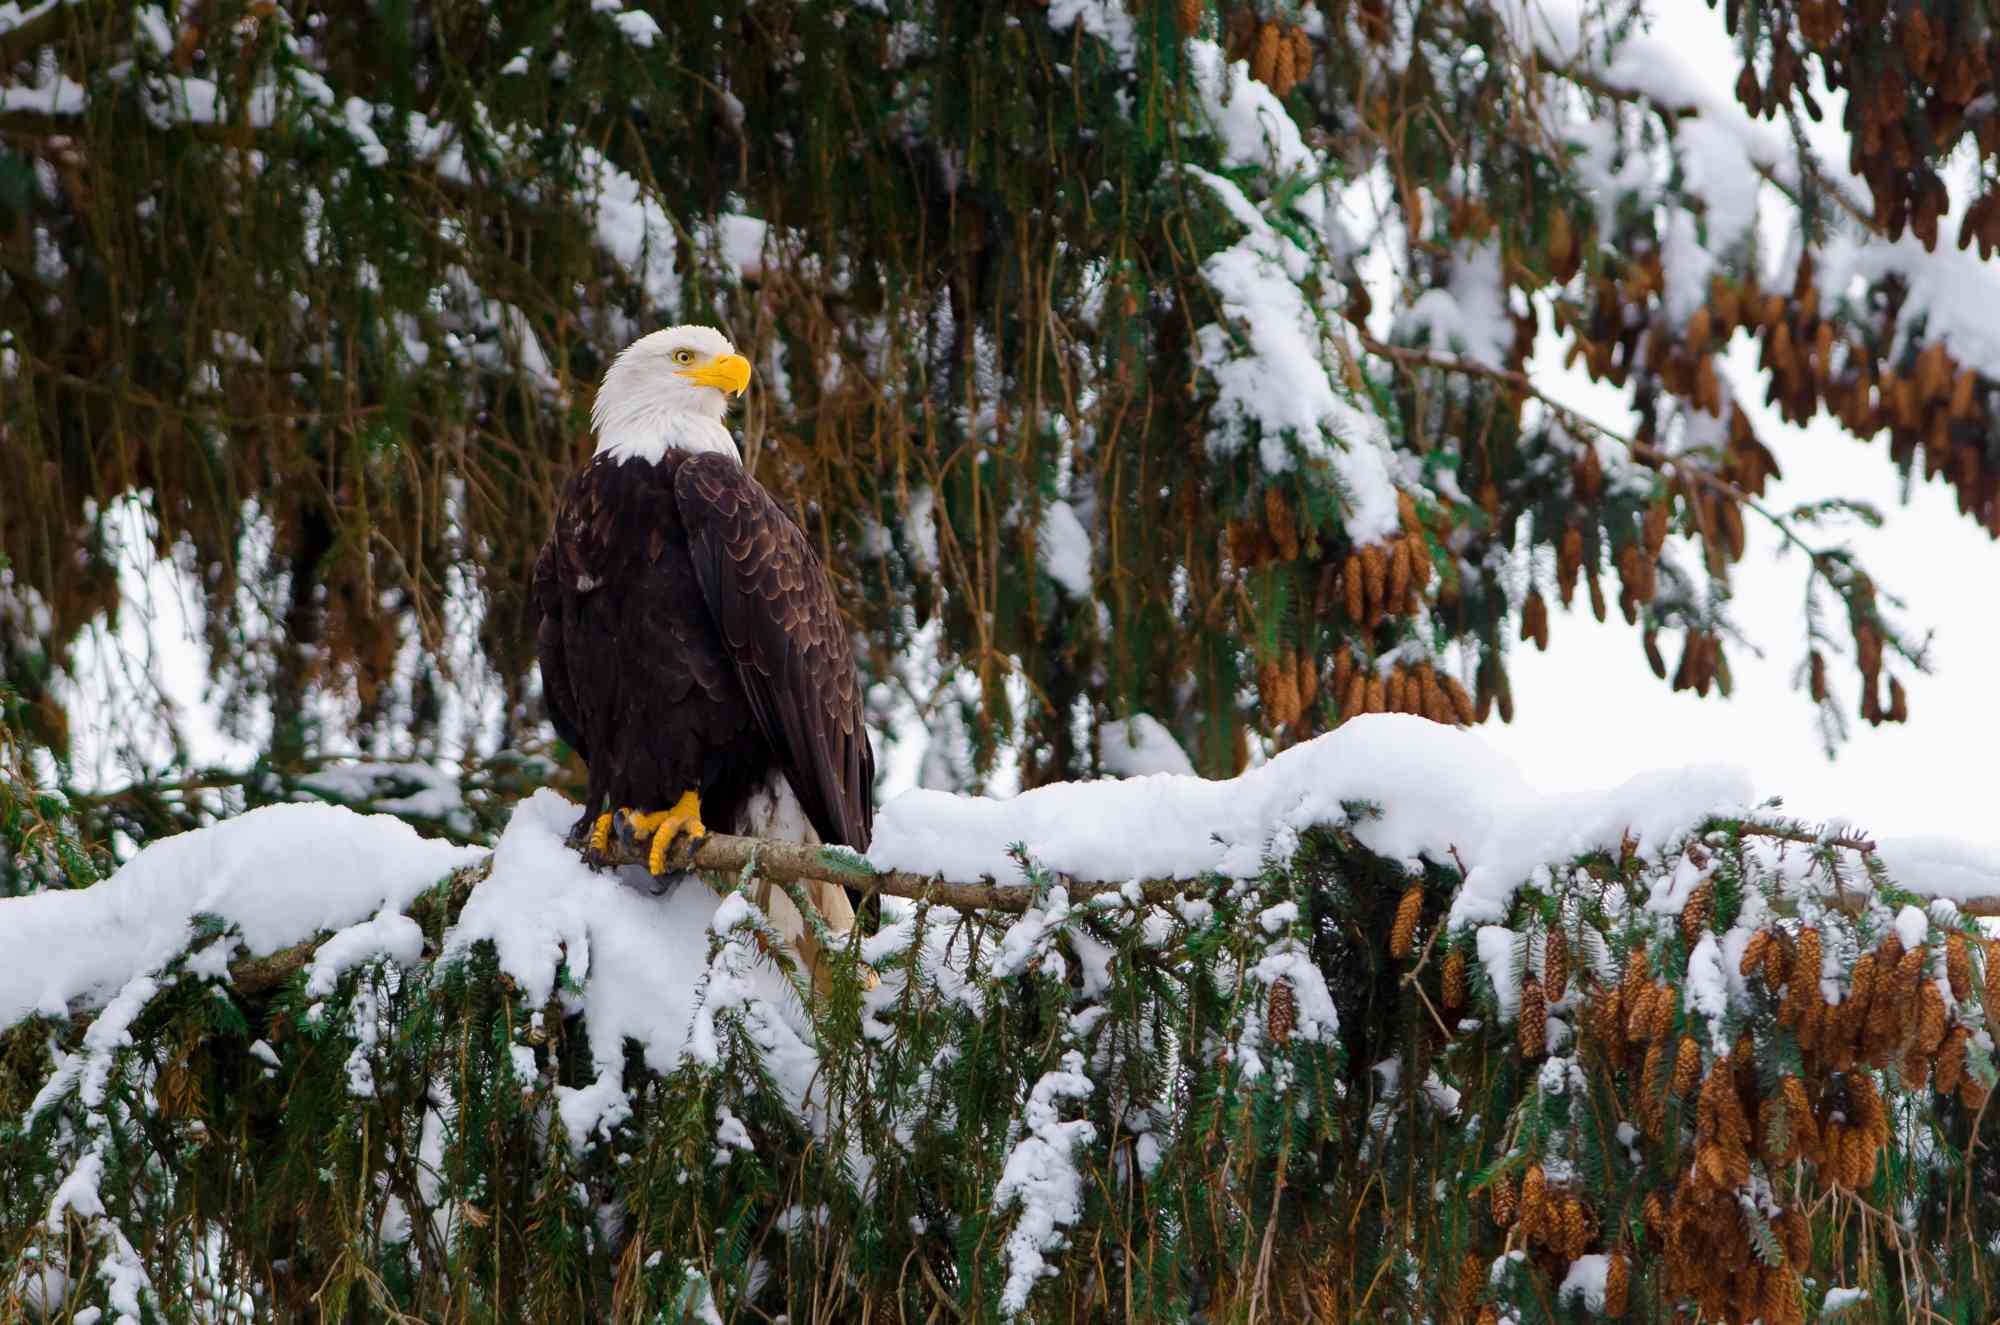 Bald Eagle in a Snowy Tree - Ottawa - Canada